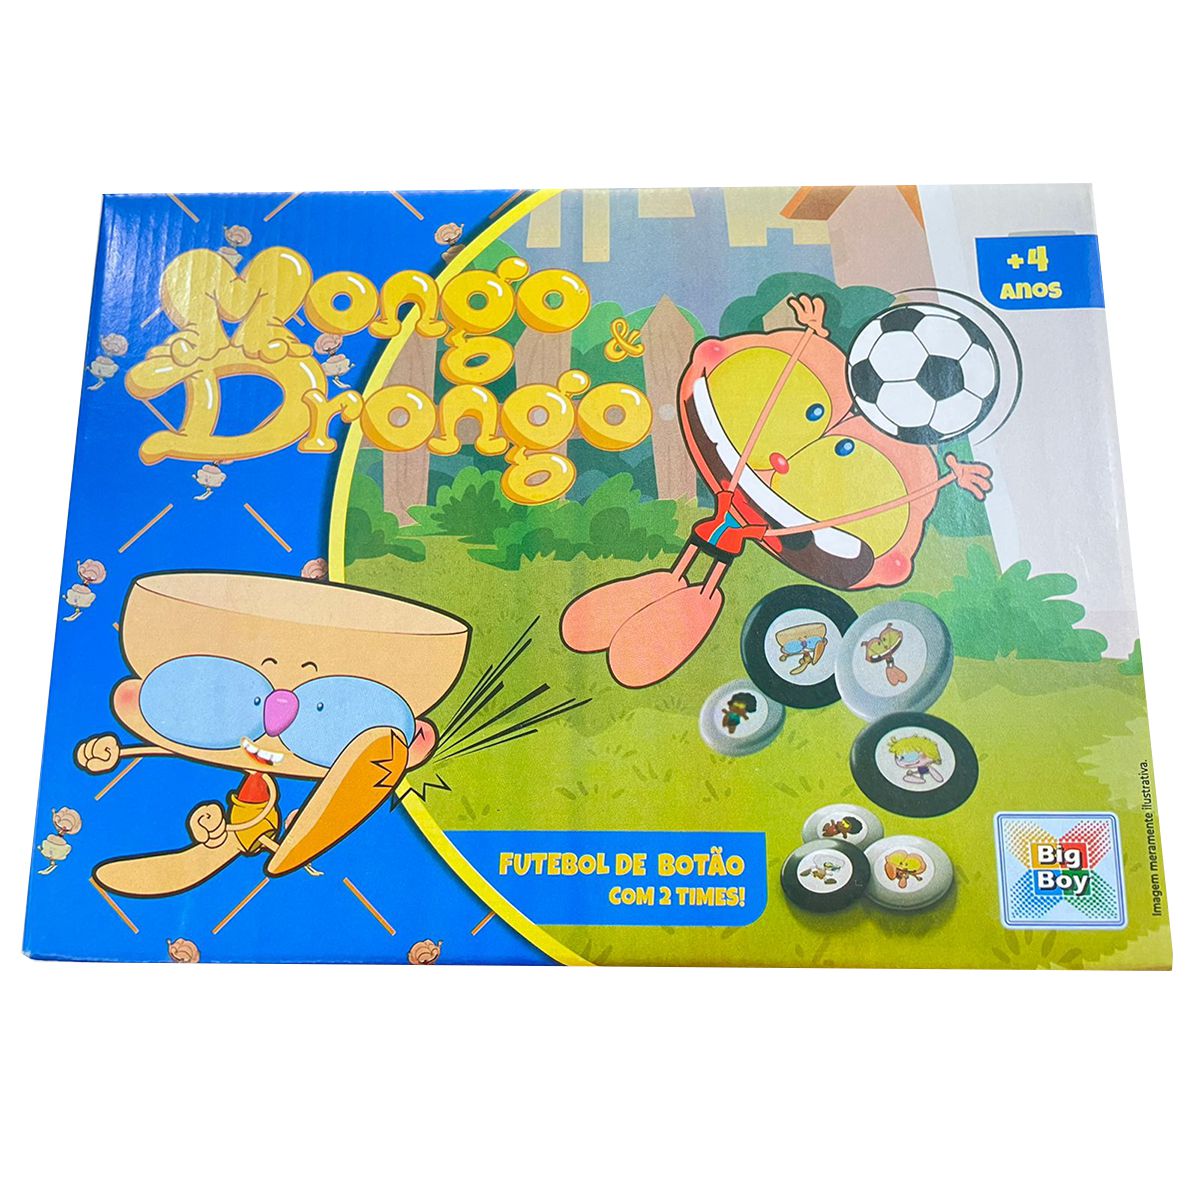 Jogo Futebol de Botão Mongo & Drongo Brinquedo Infantil - MIXMAGAZINE -  LEVANDO PRATICIDADE AO SEU DIA A DIA